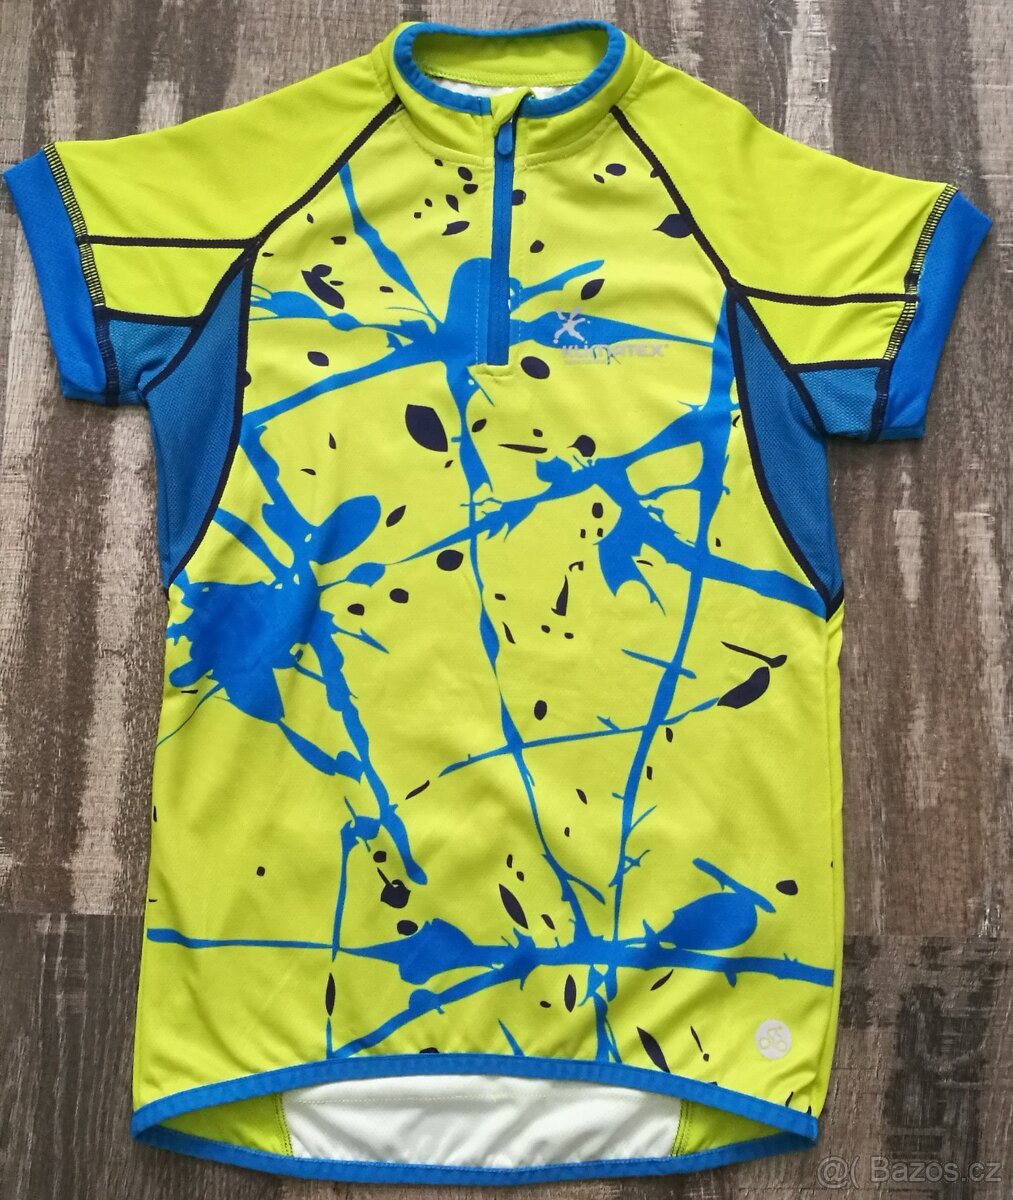 Dětský cyklistický dres Klimatex s krátkým rukávem vel. 146